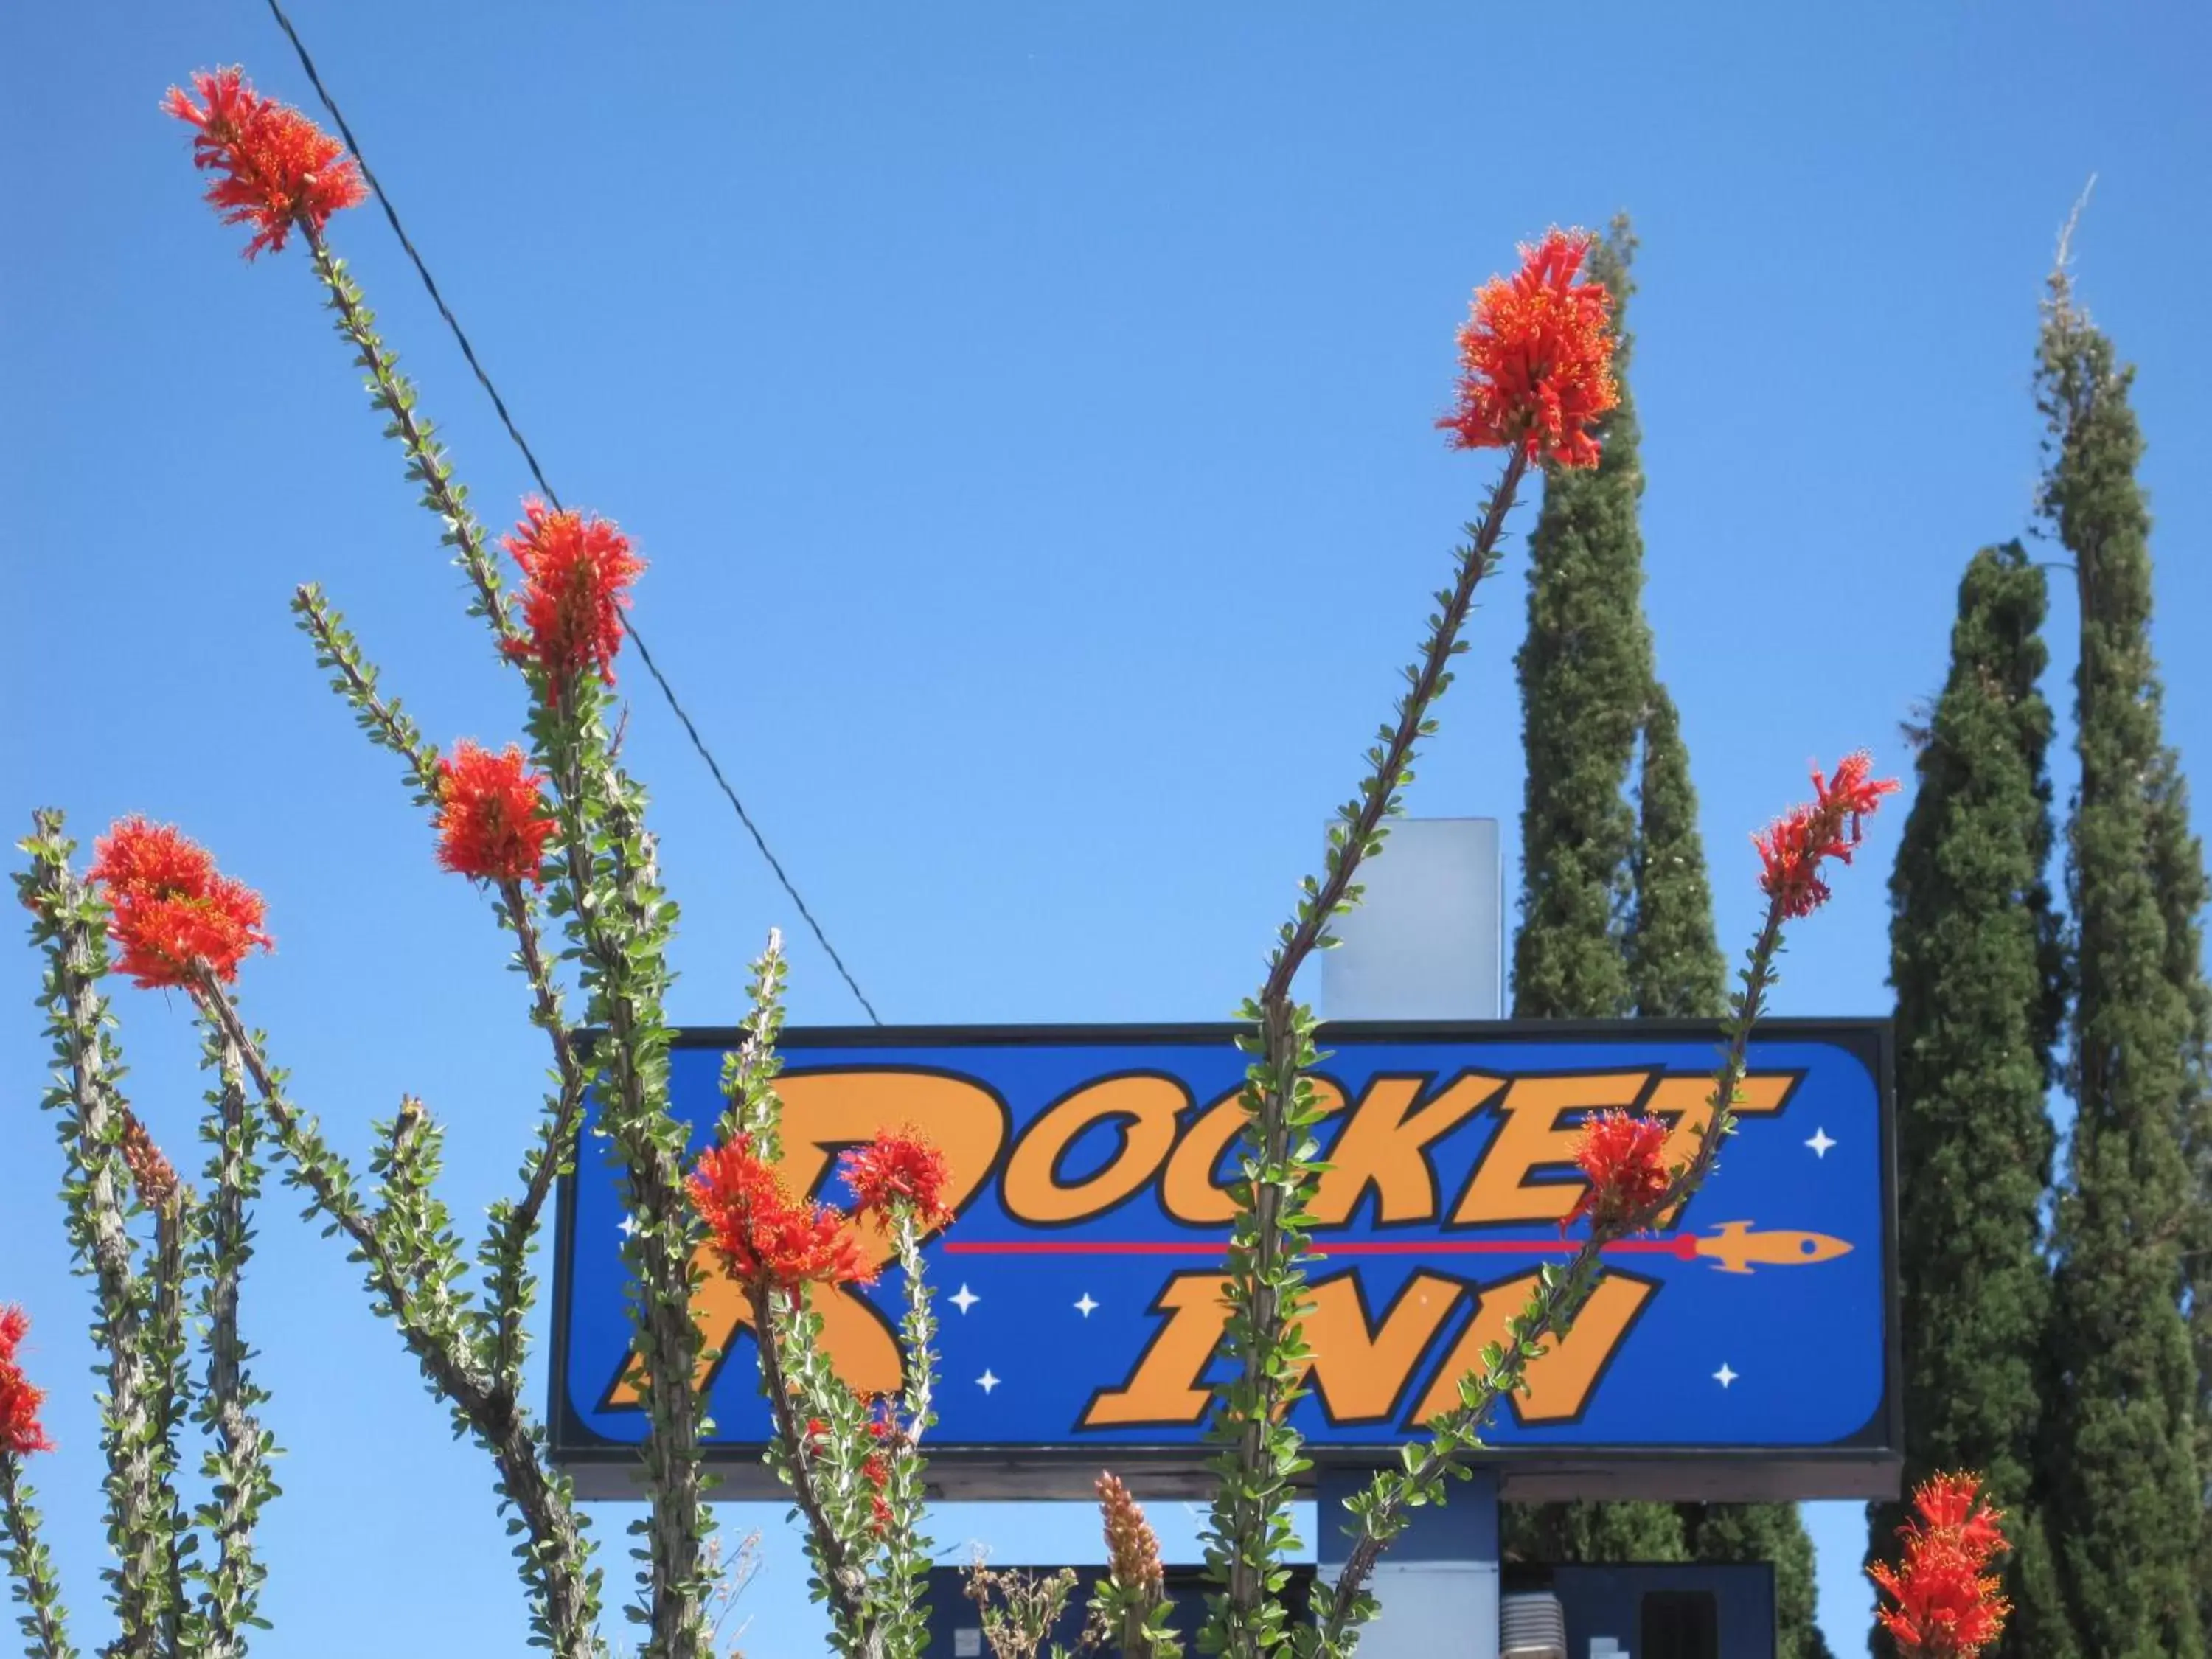 Property logo or sign in Rocket Inn